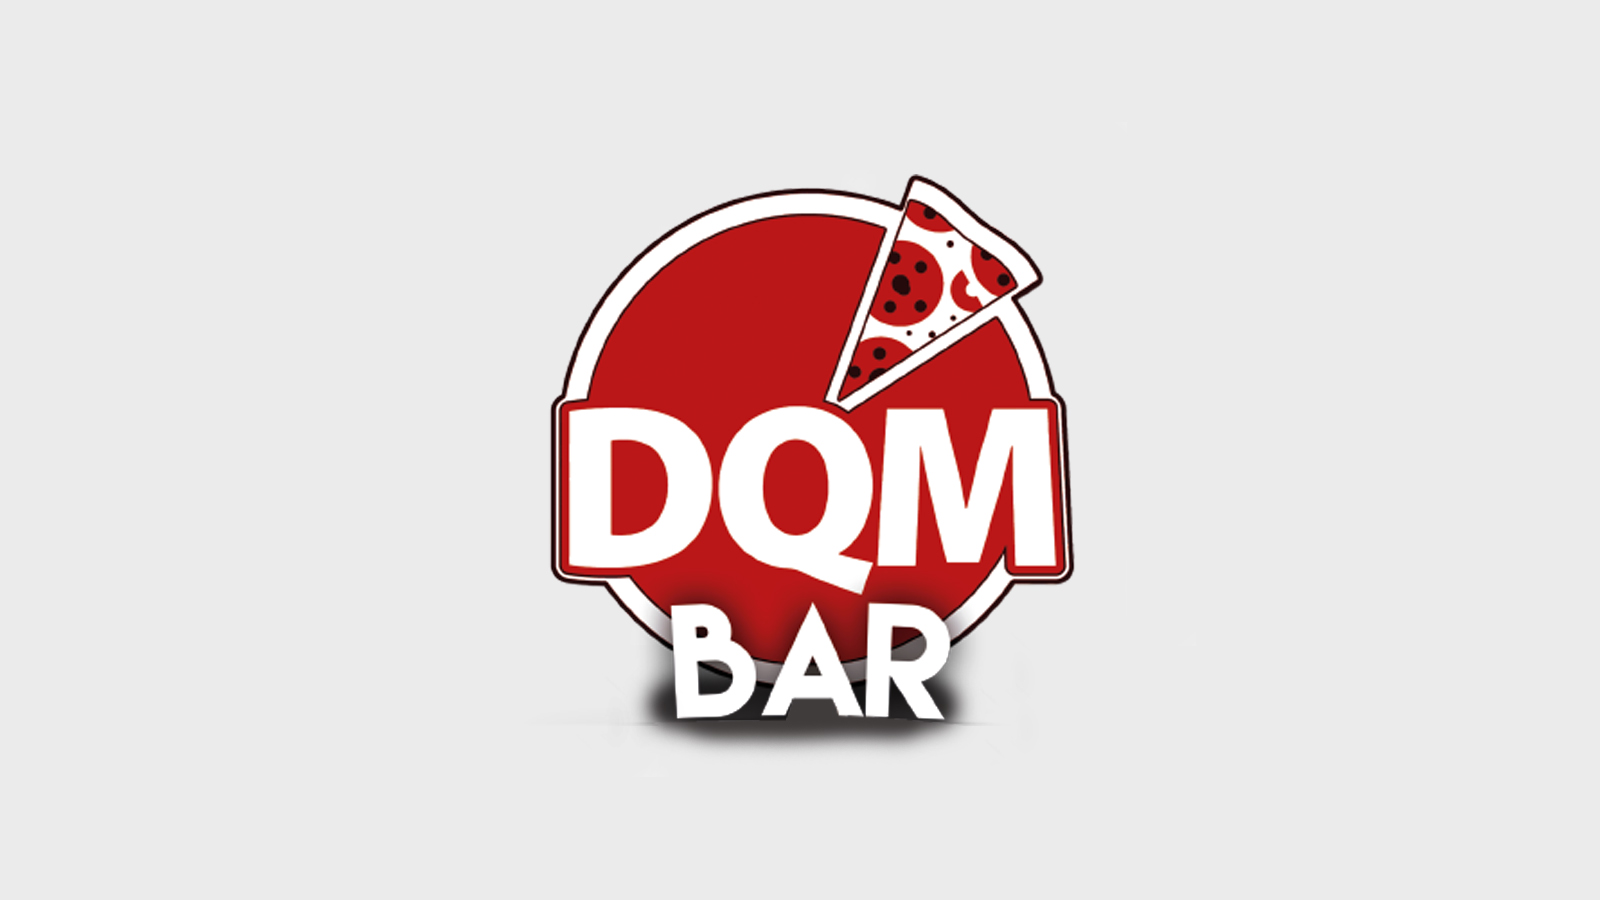 DQM Bar logo